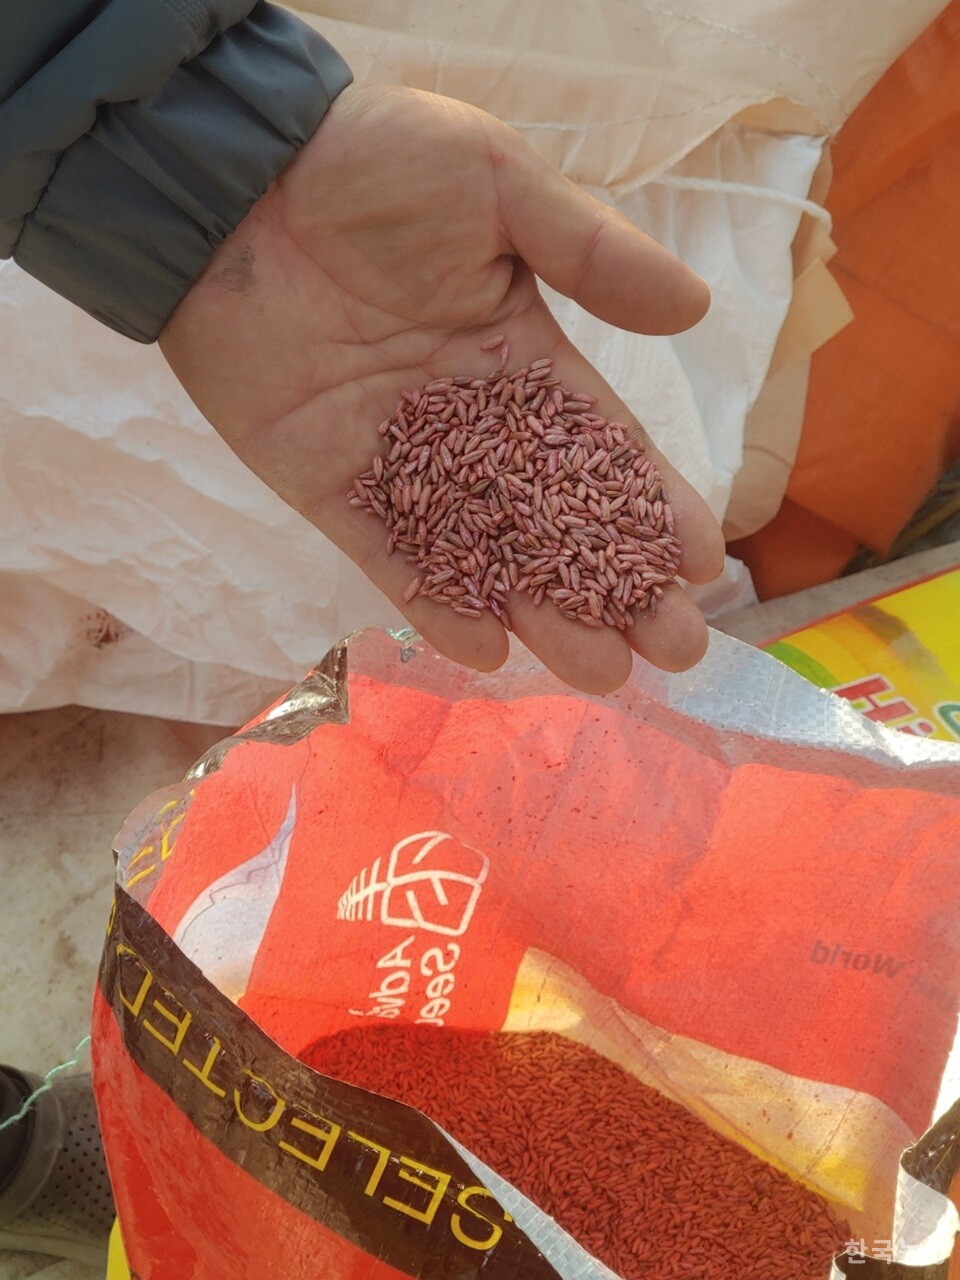 전남지역의 유기농민 A씨가 농림축산식품부 유기농업자재지원사업을 통해 `지원' 받은, 시뻘건 색의 수입 소독종자를 보여주고 있다. 이 종자는 남아공에서 수입된 `윈터그레이저-70' 종자다.